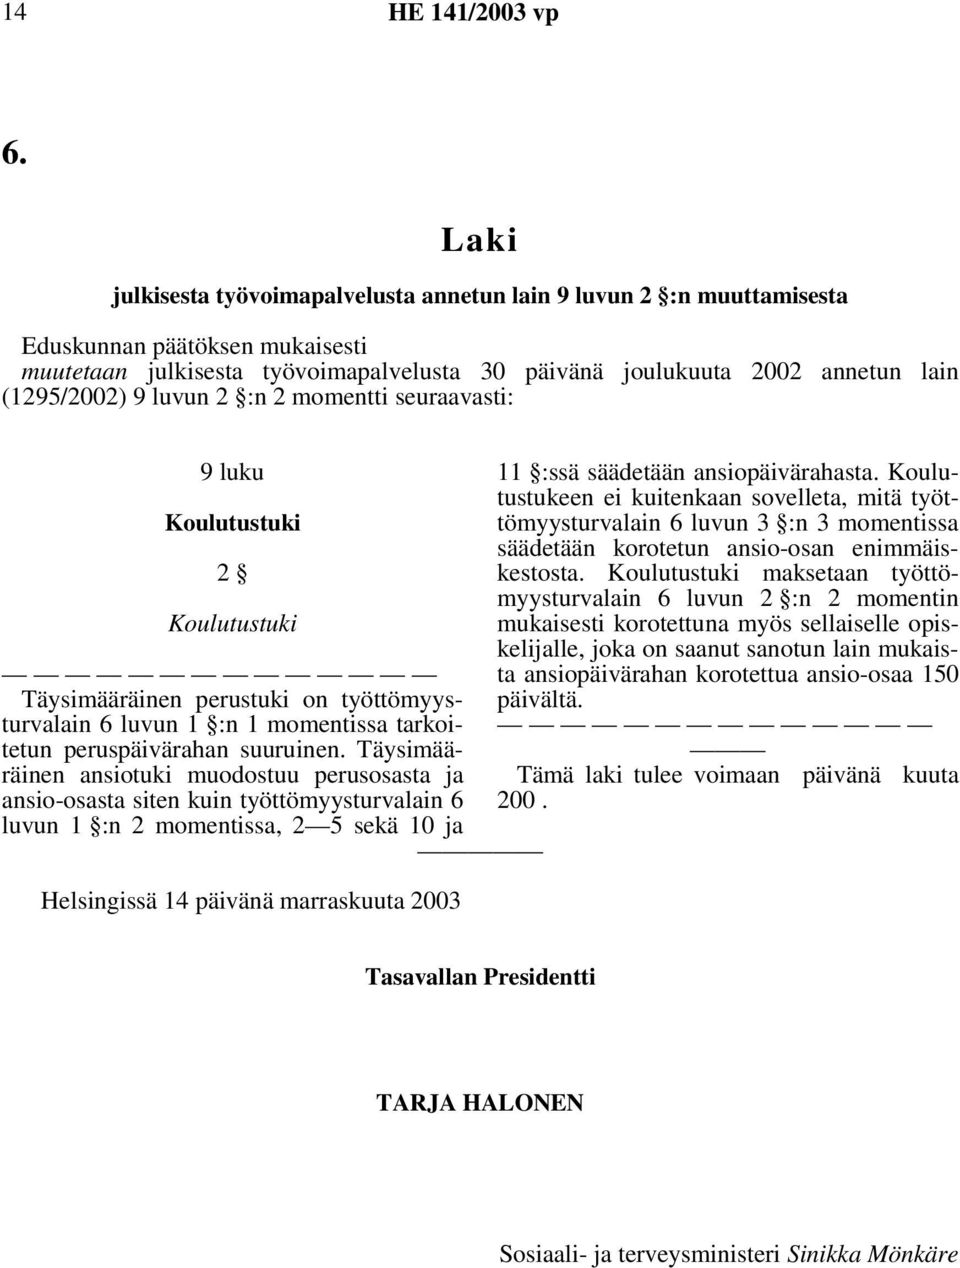 Täysimääräinen ansiotuki muodostuu perusosasta ja ansio-osasta siten kuin työttömyysturvalain 6 luvun 1 :n 2 momentissa, 2 5 sekä 10 ja Helsingissä 14 päivänä marraskuuta 2003 11 :ssä säädetään